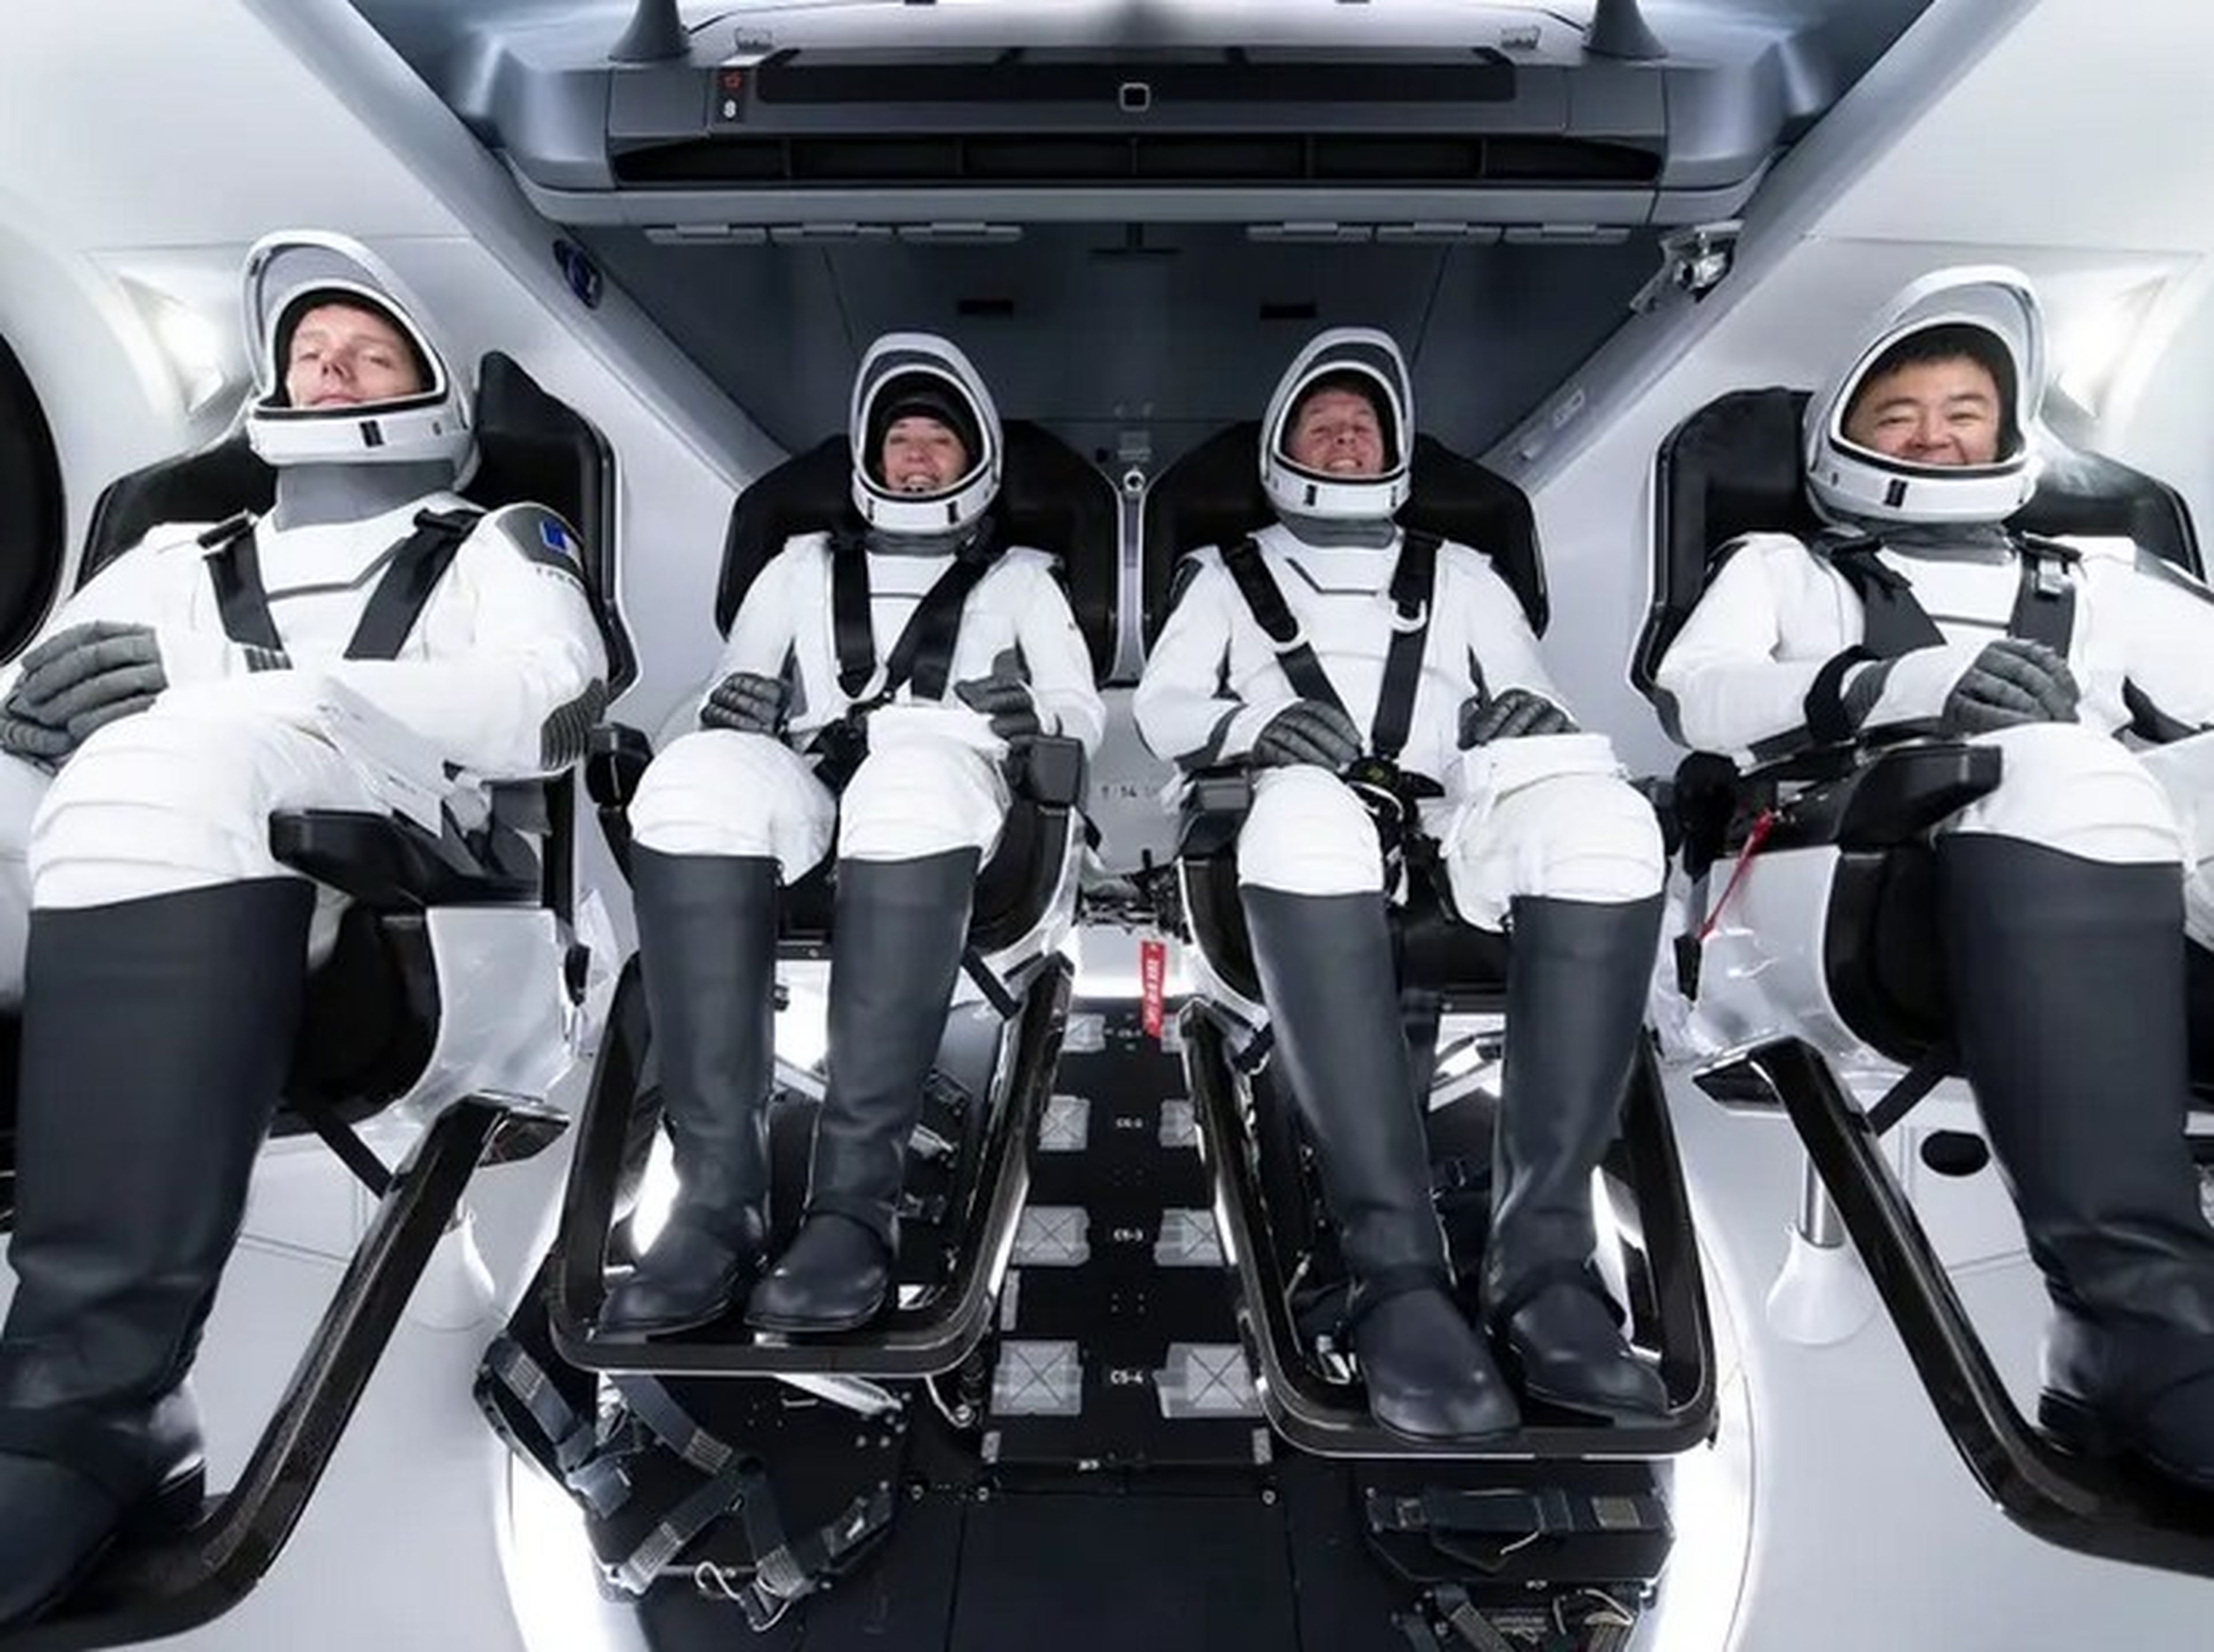 Los astronautas de Crew-2 durante una sesión de entrenamiento en Hawthorne, California (Estados Unidos). De izquierda a derecha: Thomas Pesquet, Megan McArthur, Shane Kimbrough y Akihiko Hoshide.